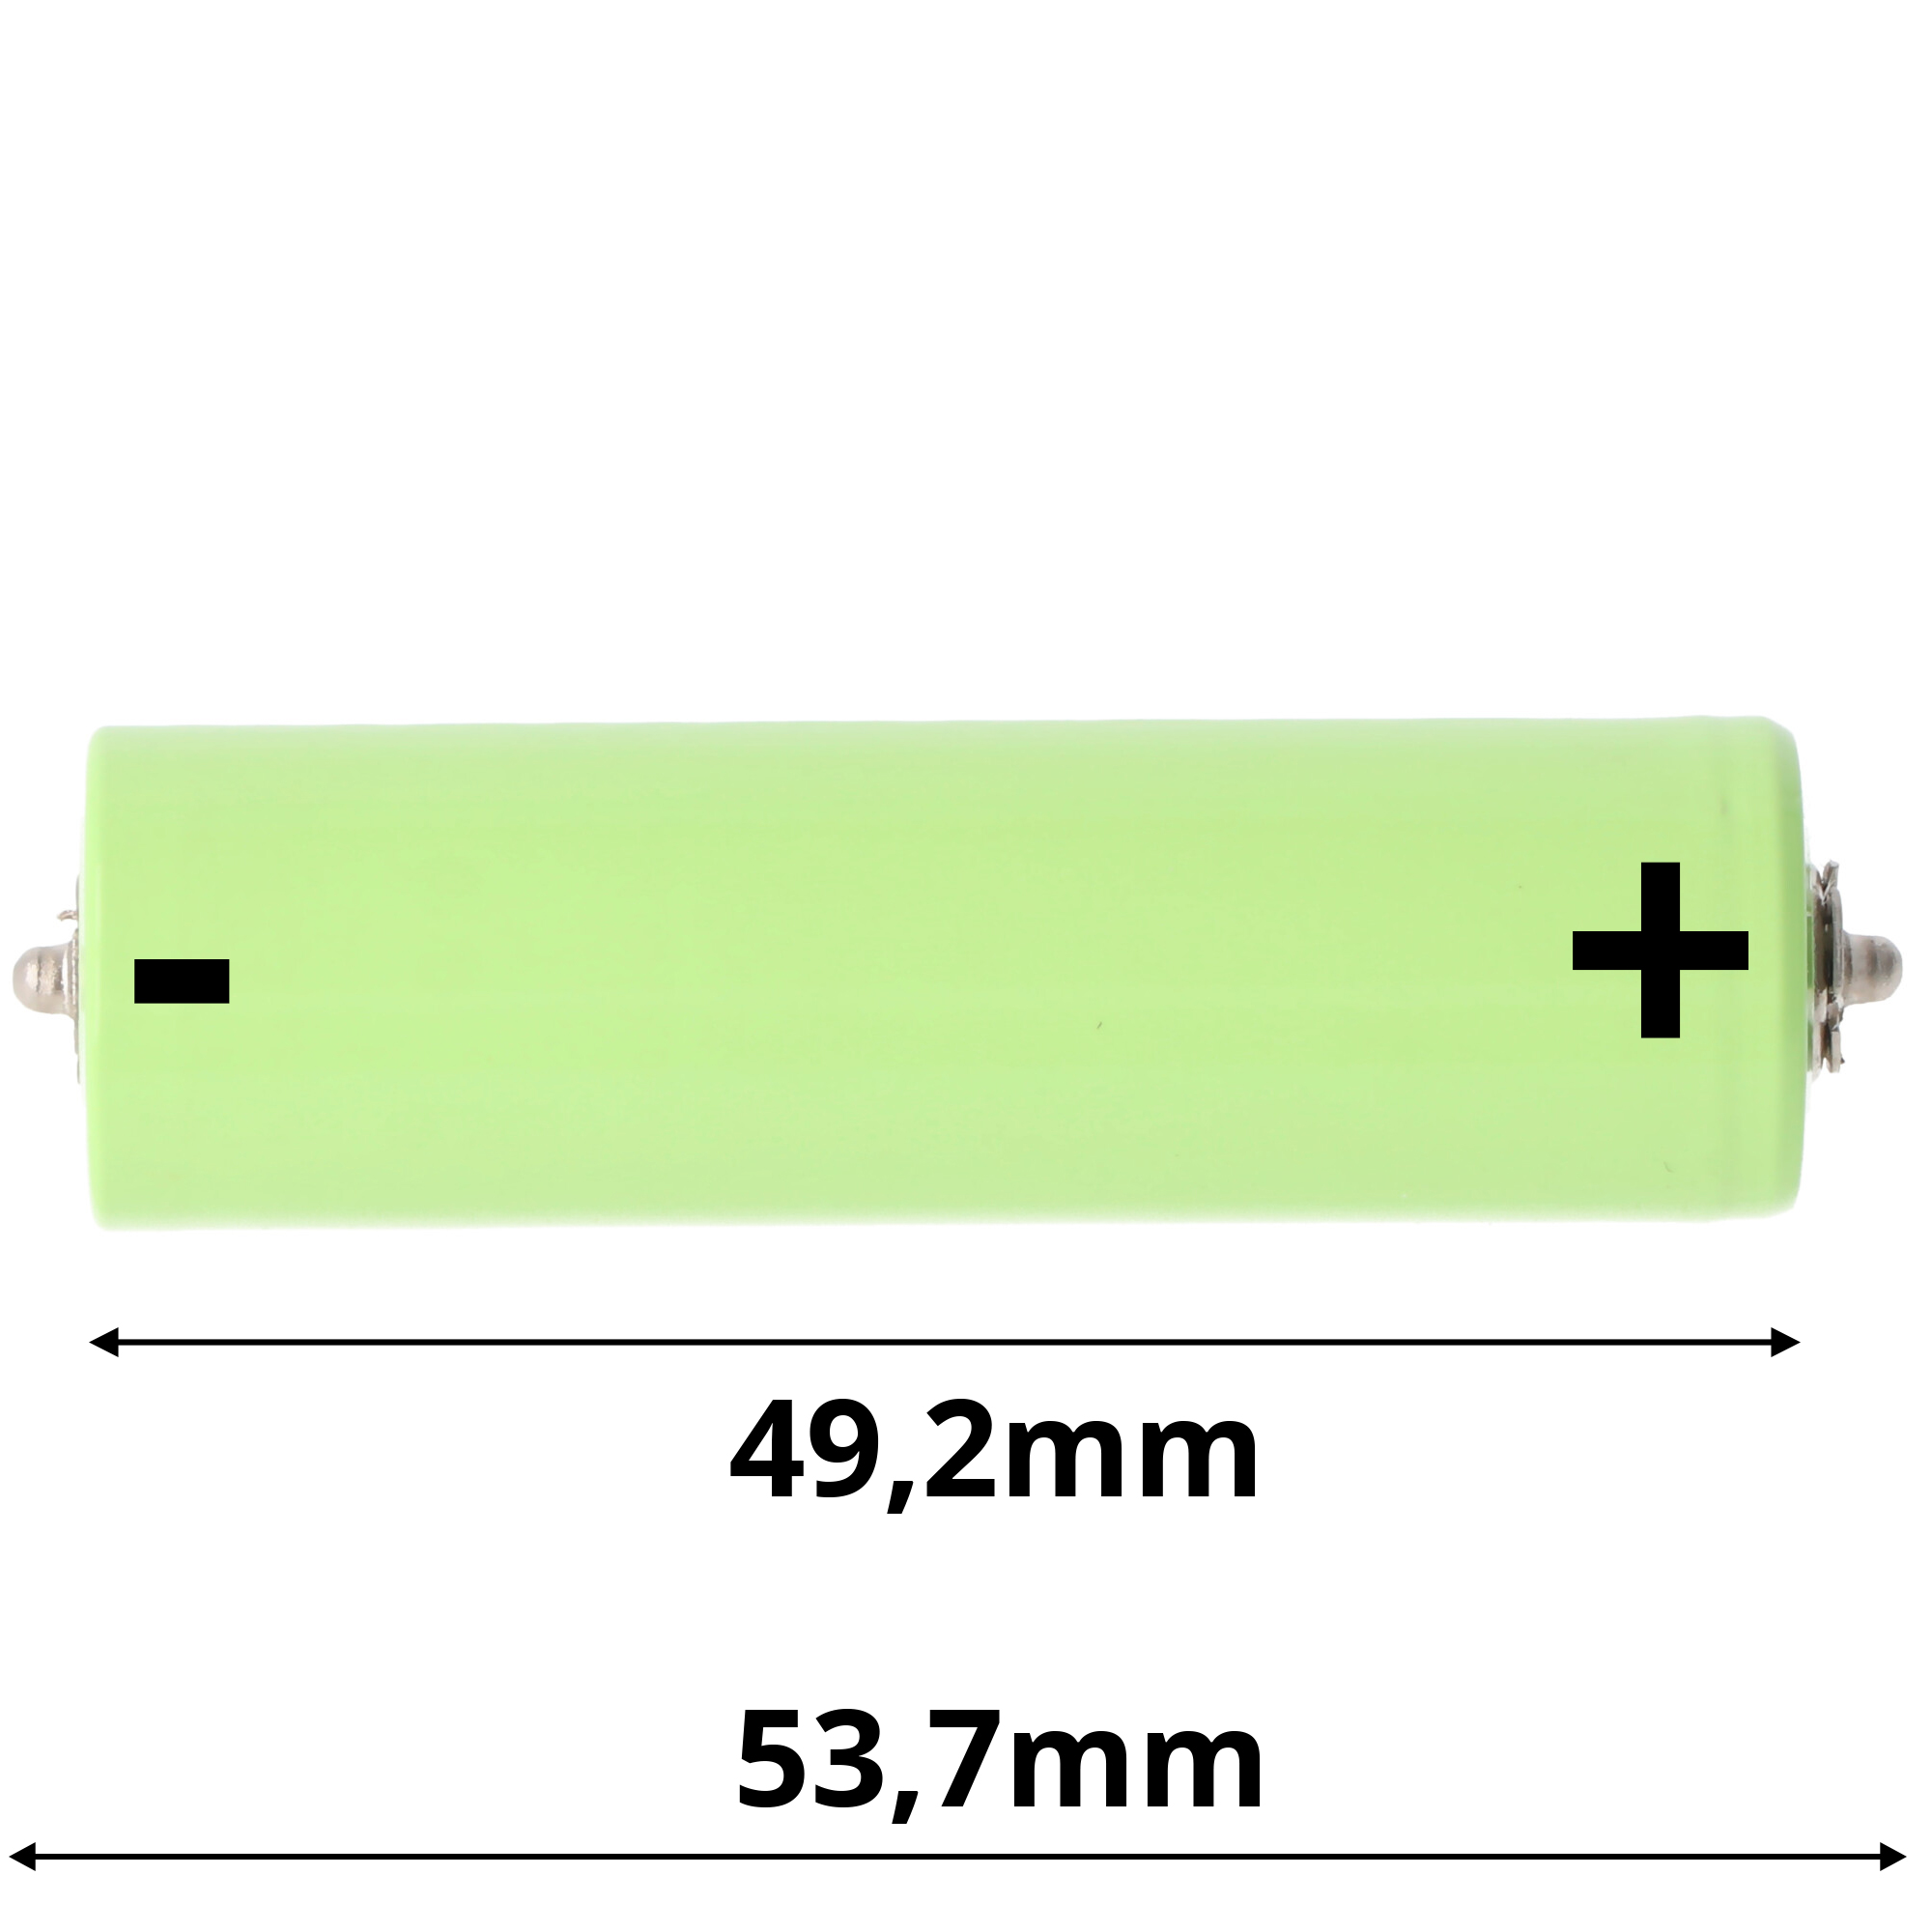 NiMH49,40  x 14,5mm (54,2) mit Stiftkontakten Akku exakt passend für Braun 390cc Akku NiMH, Länge 54,2 und 50,1mm beachten